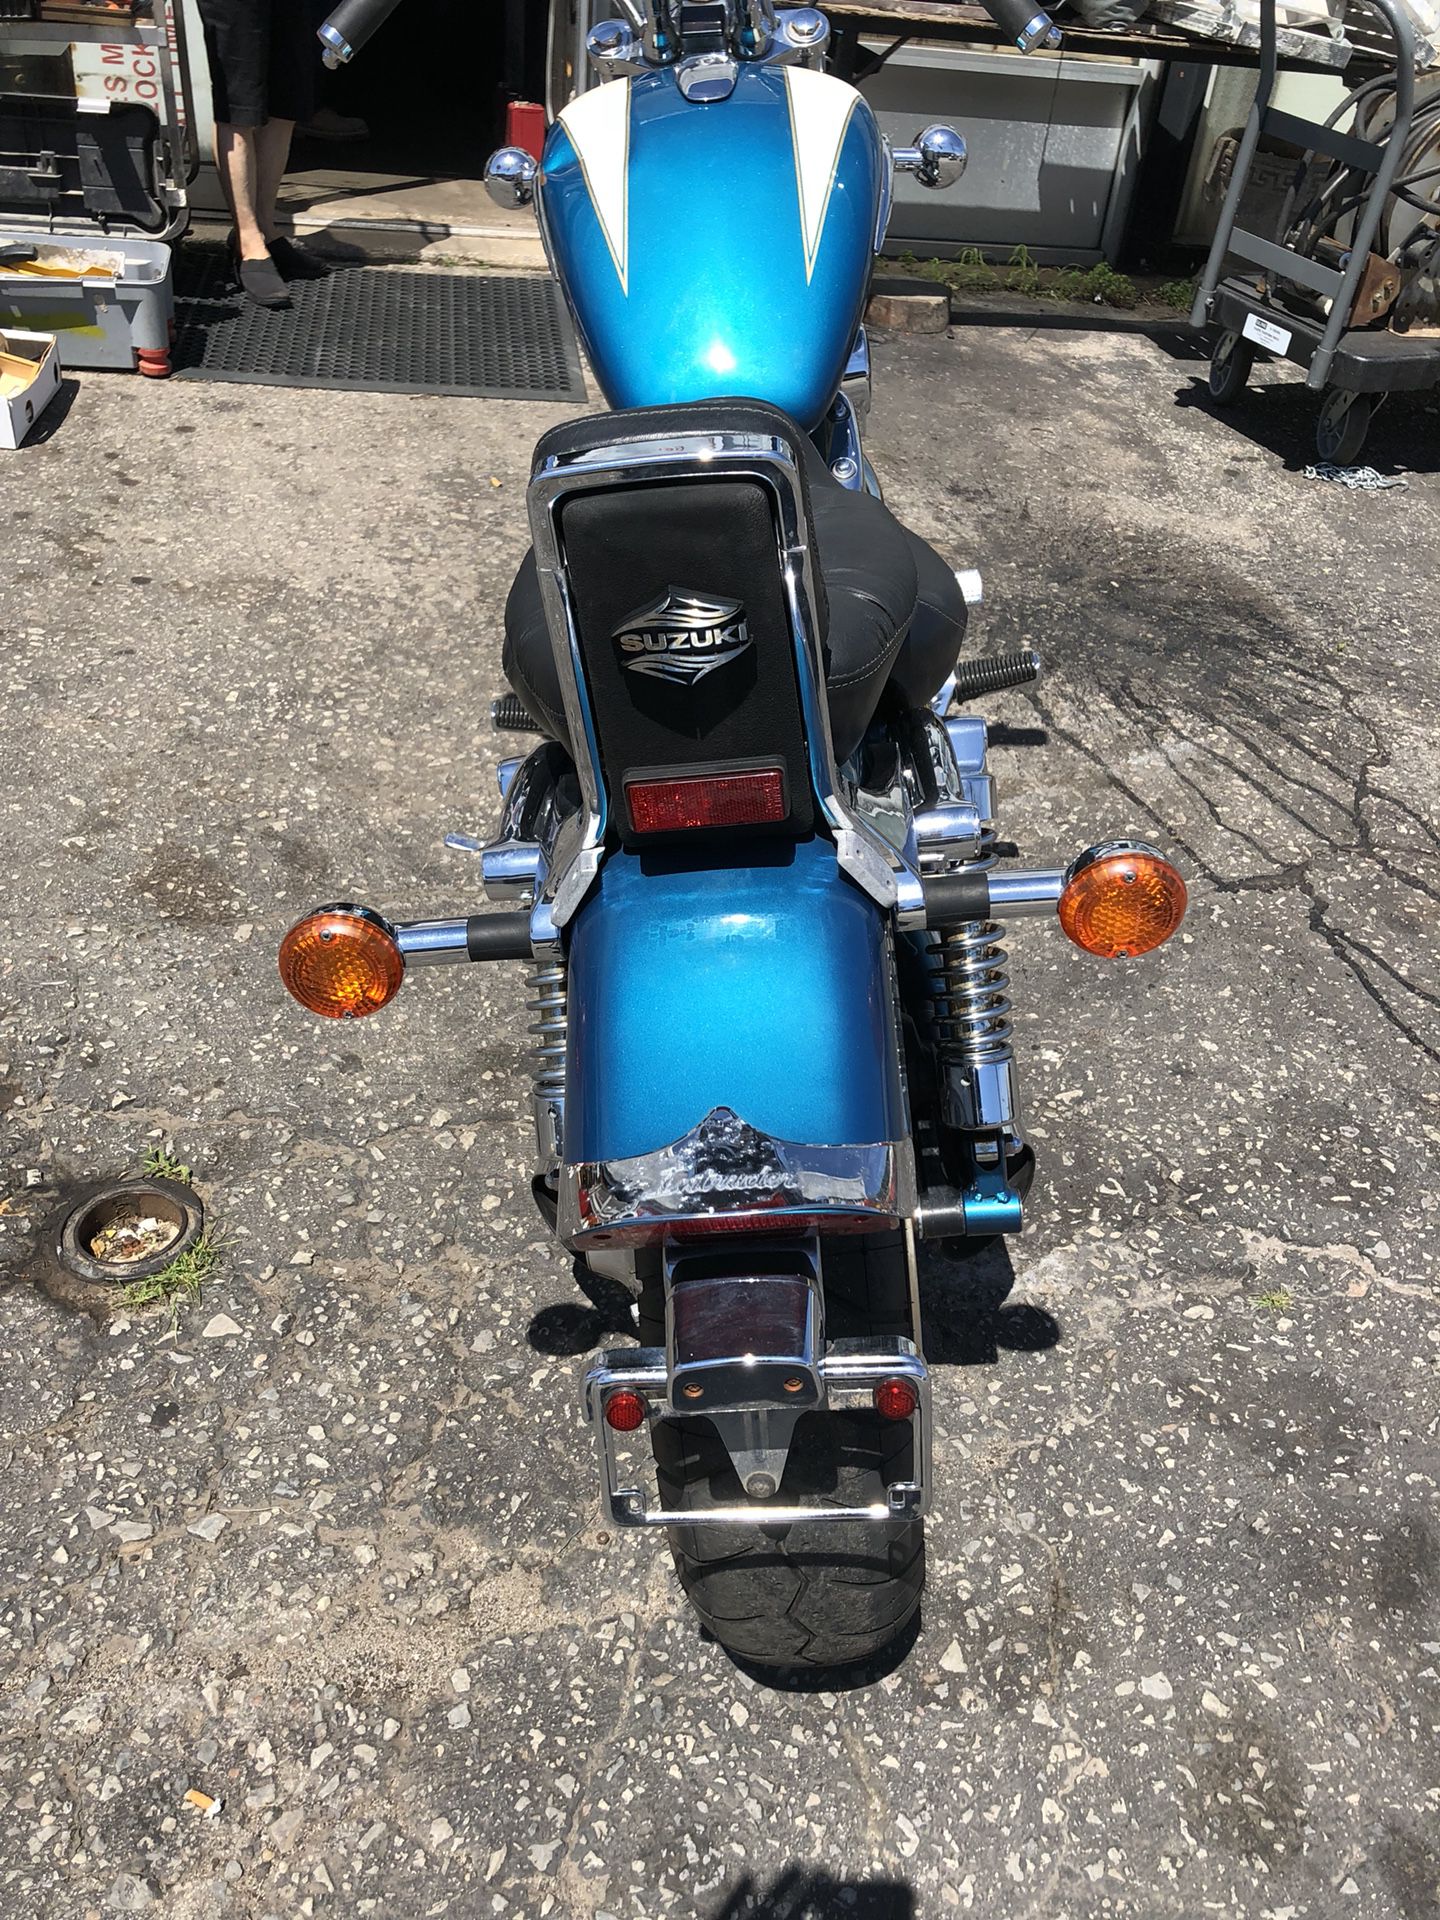 Suzuki intruder 1400 cc cruiser motorcycle for Sale in Norristown, PA -  OfferUp